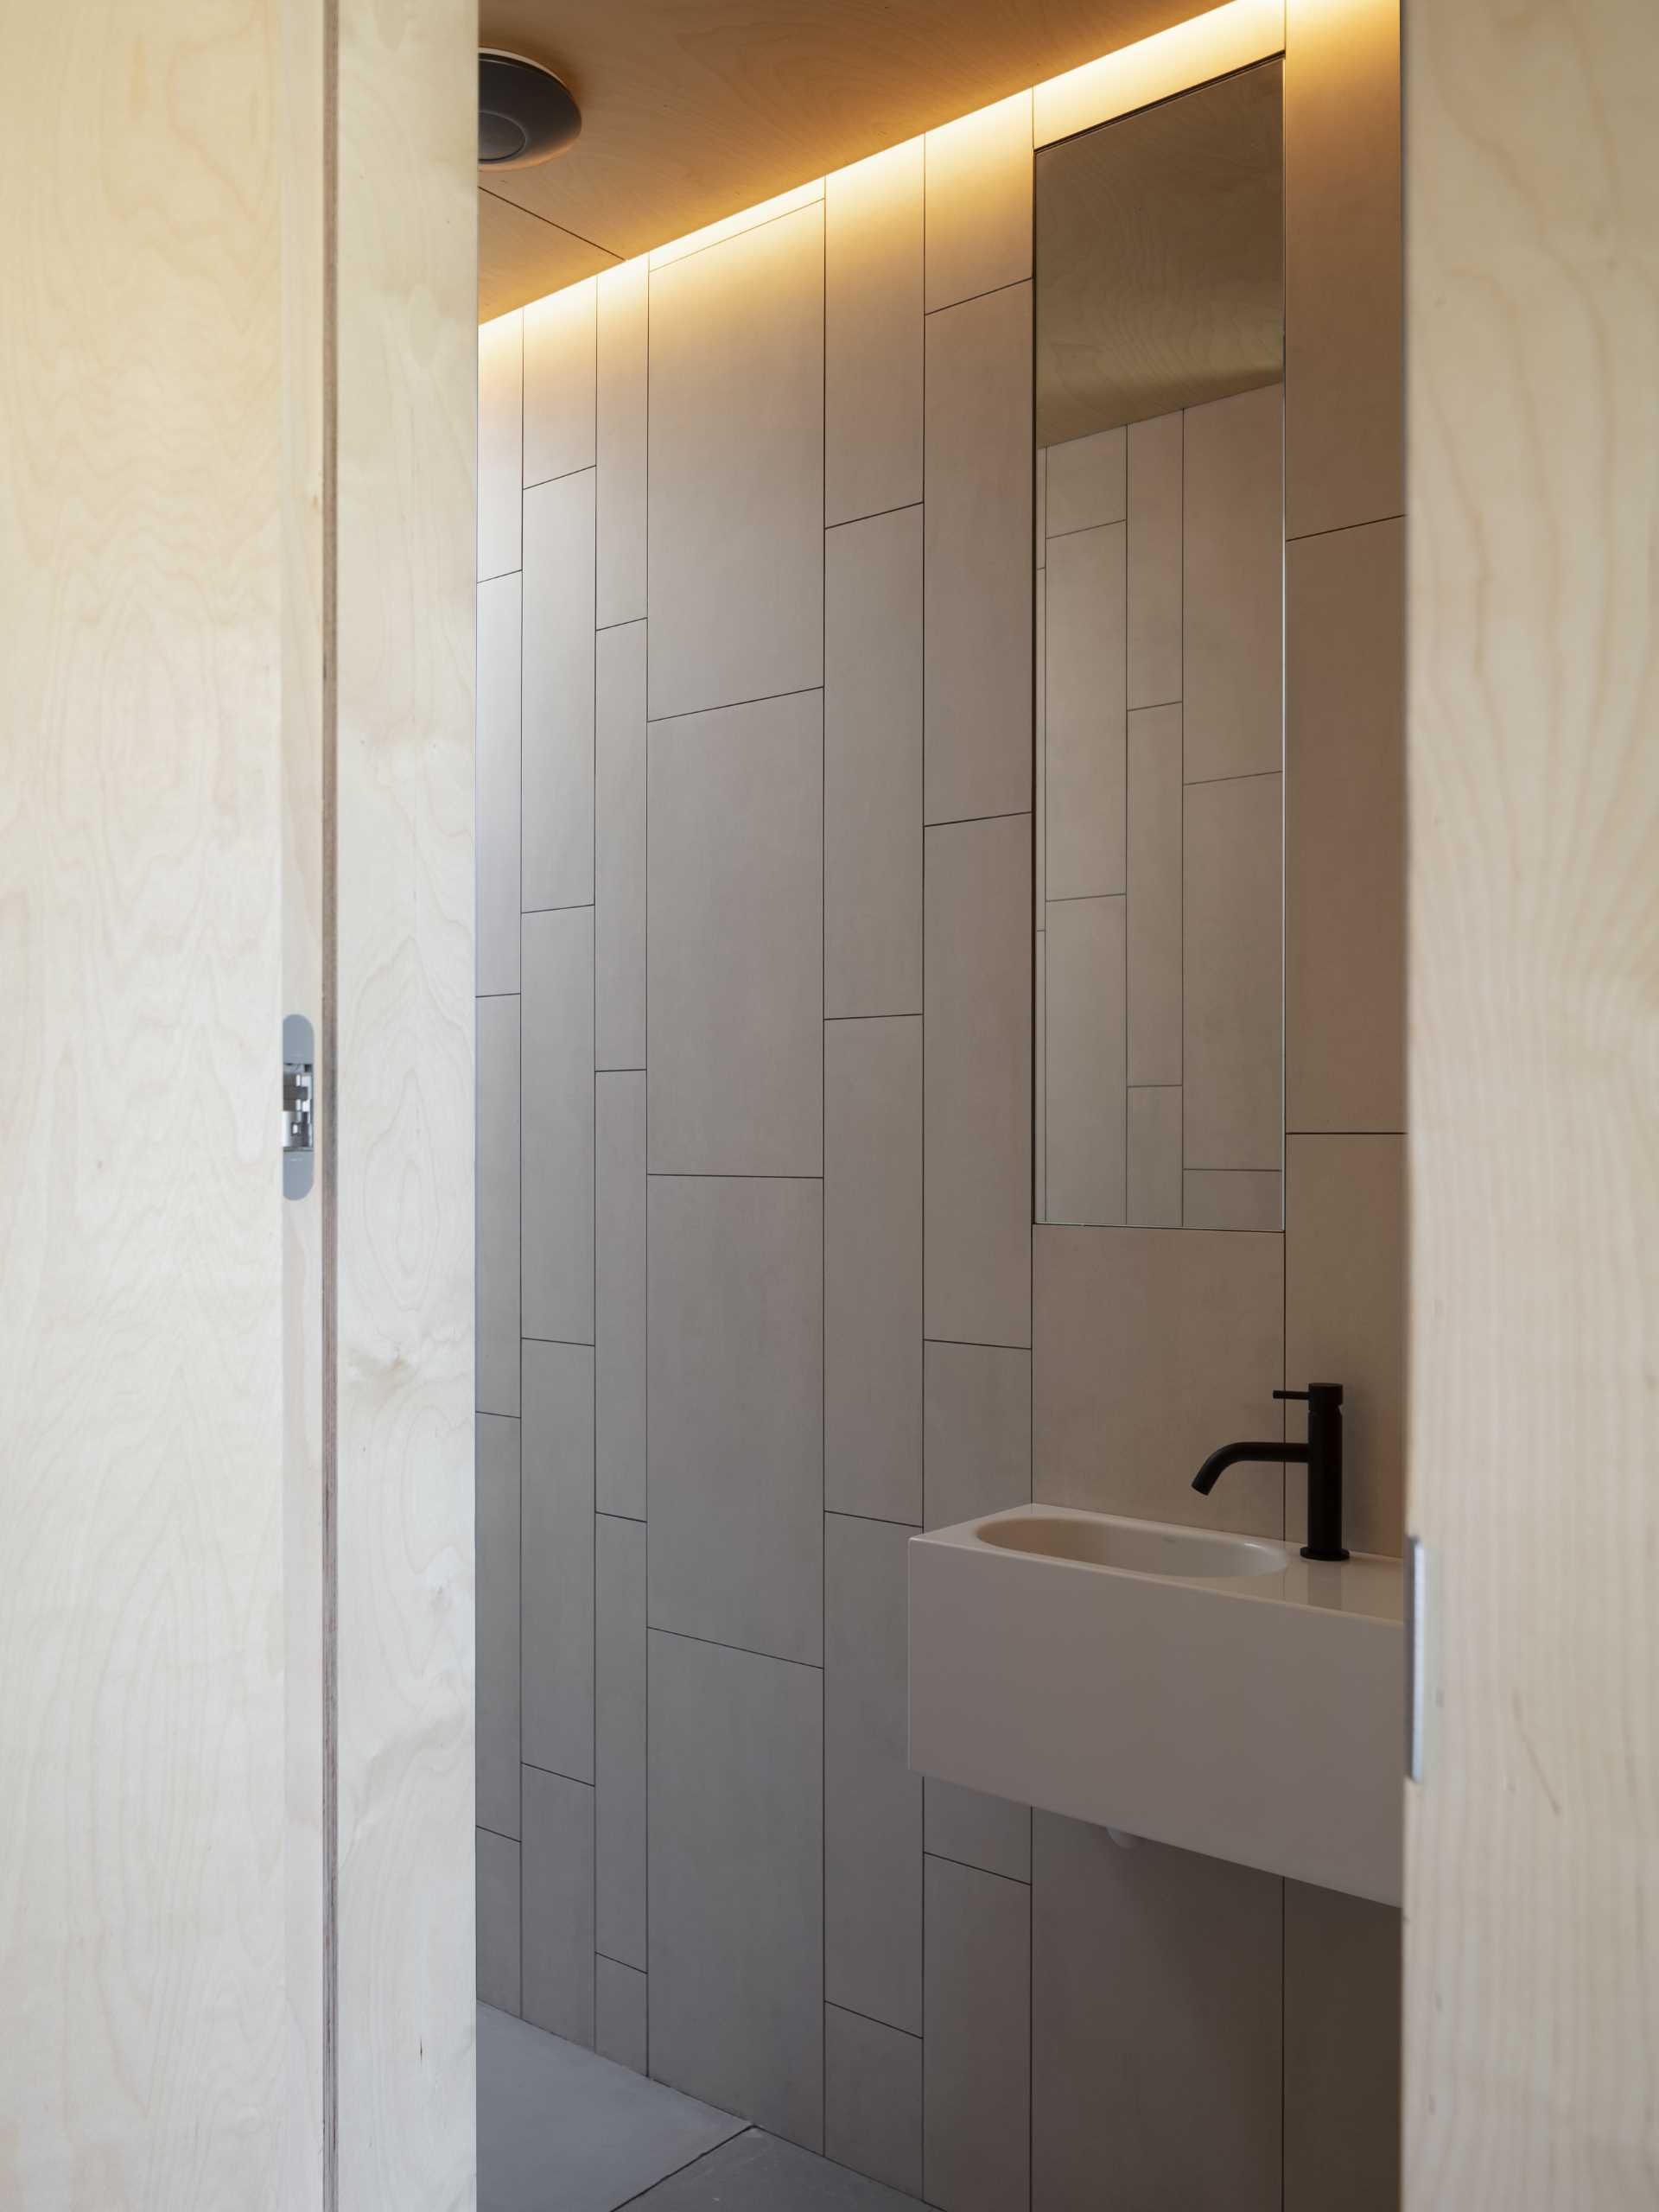 در این حمام مدرن، دیوارها با کاشی پوشانده شده اند، در حالی که یک آینه بلند عمودی چشم را به سمت بالا به نور پنهان می کشاند.